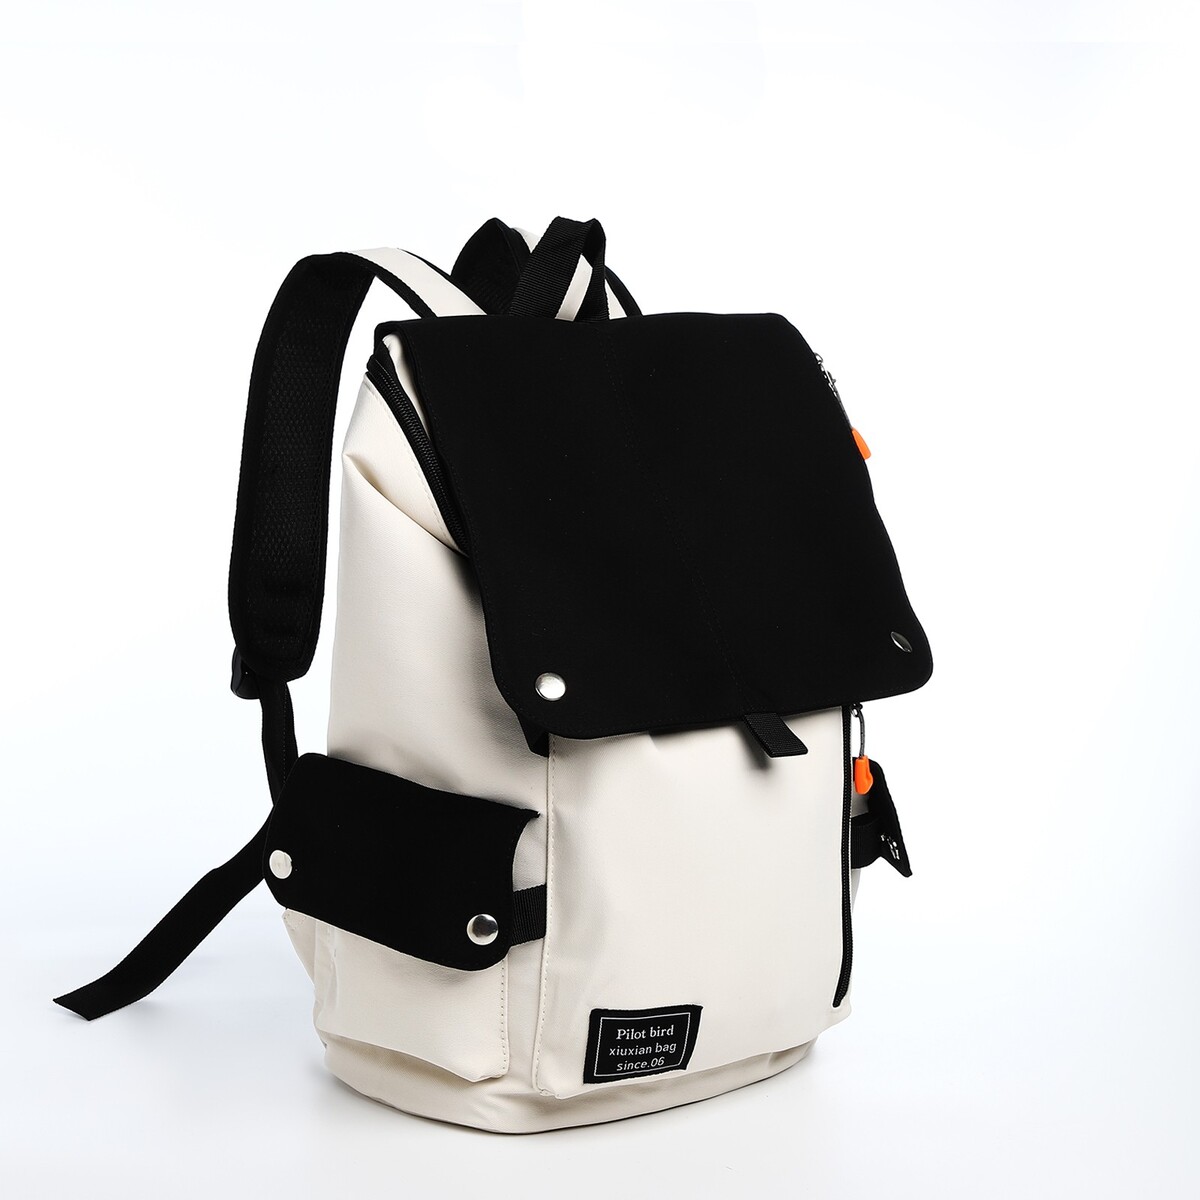 Рюкзак на молнии, 5 наружных кармана, цвет бежевый/черный рюкзак школьный из текстиля 3 кармана белый бежевый